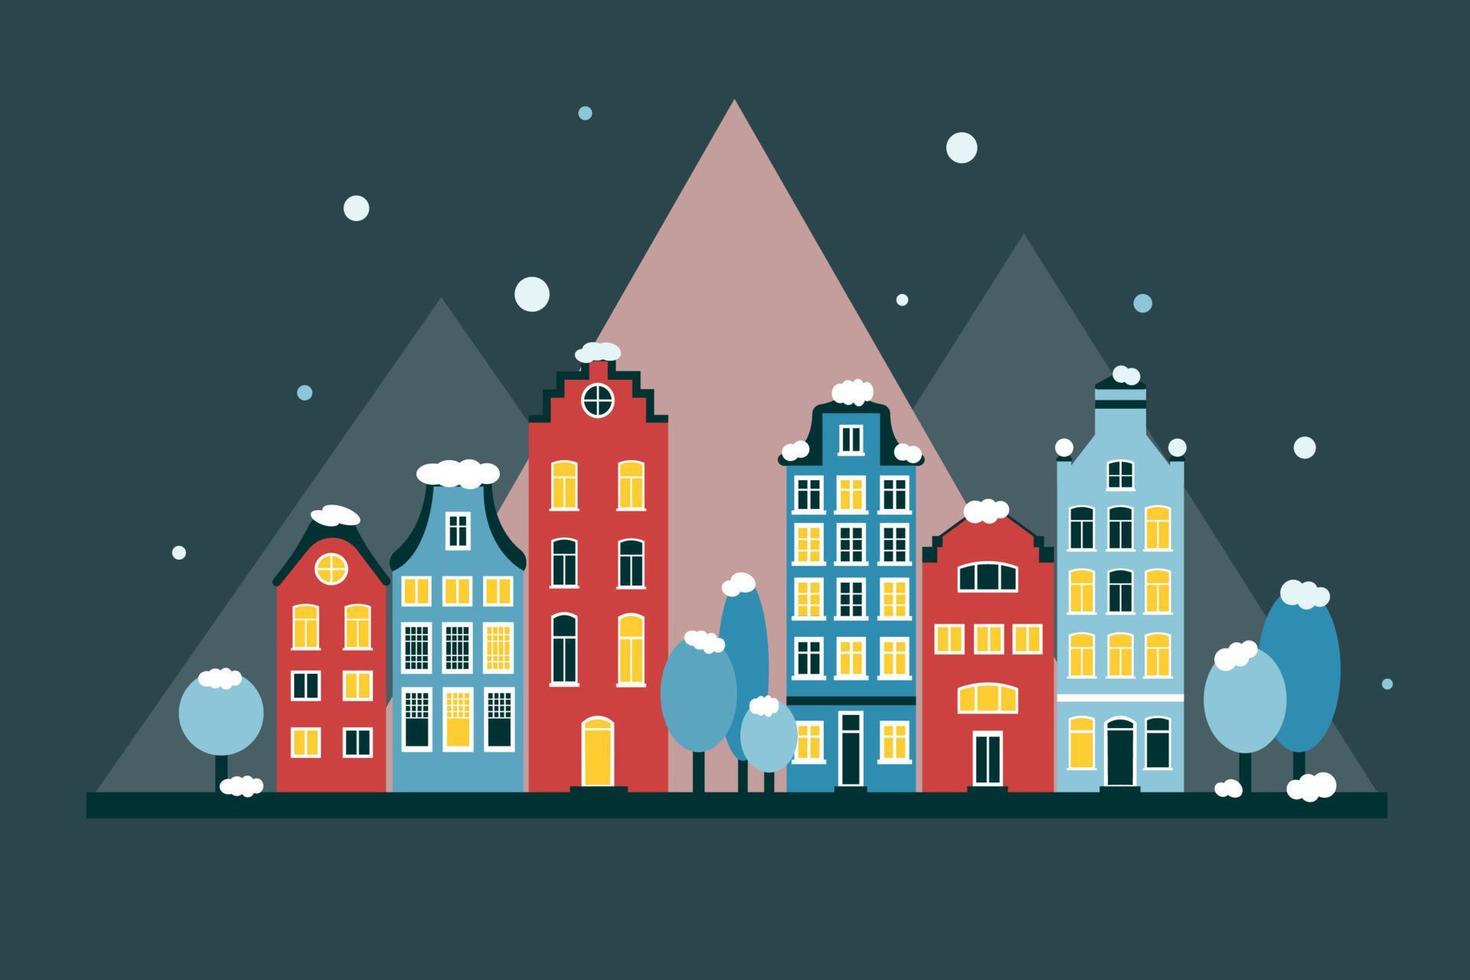 paisaje urbano invernal plano de amsterdam en colores rojo y azul. noche, fondo oscuro. montañas en el fondo. nieve en árboles y tejados. luces encendidas en las ventanas vector